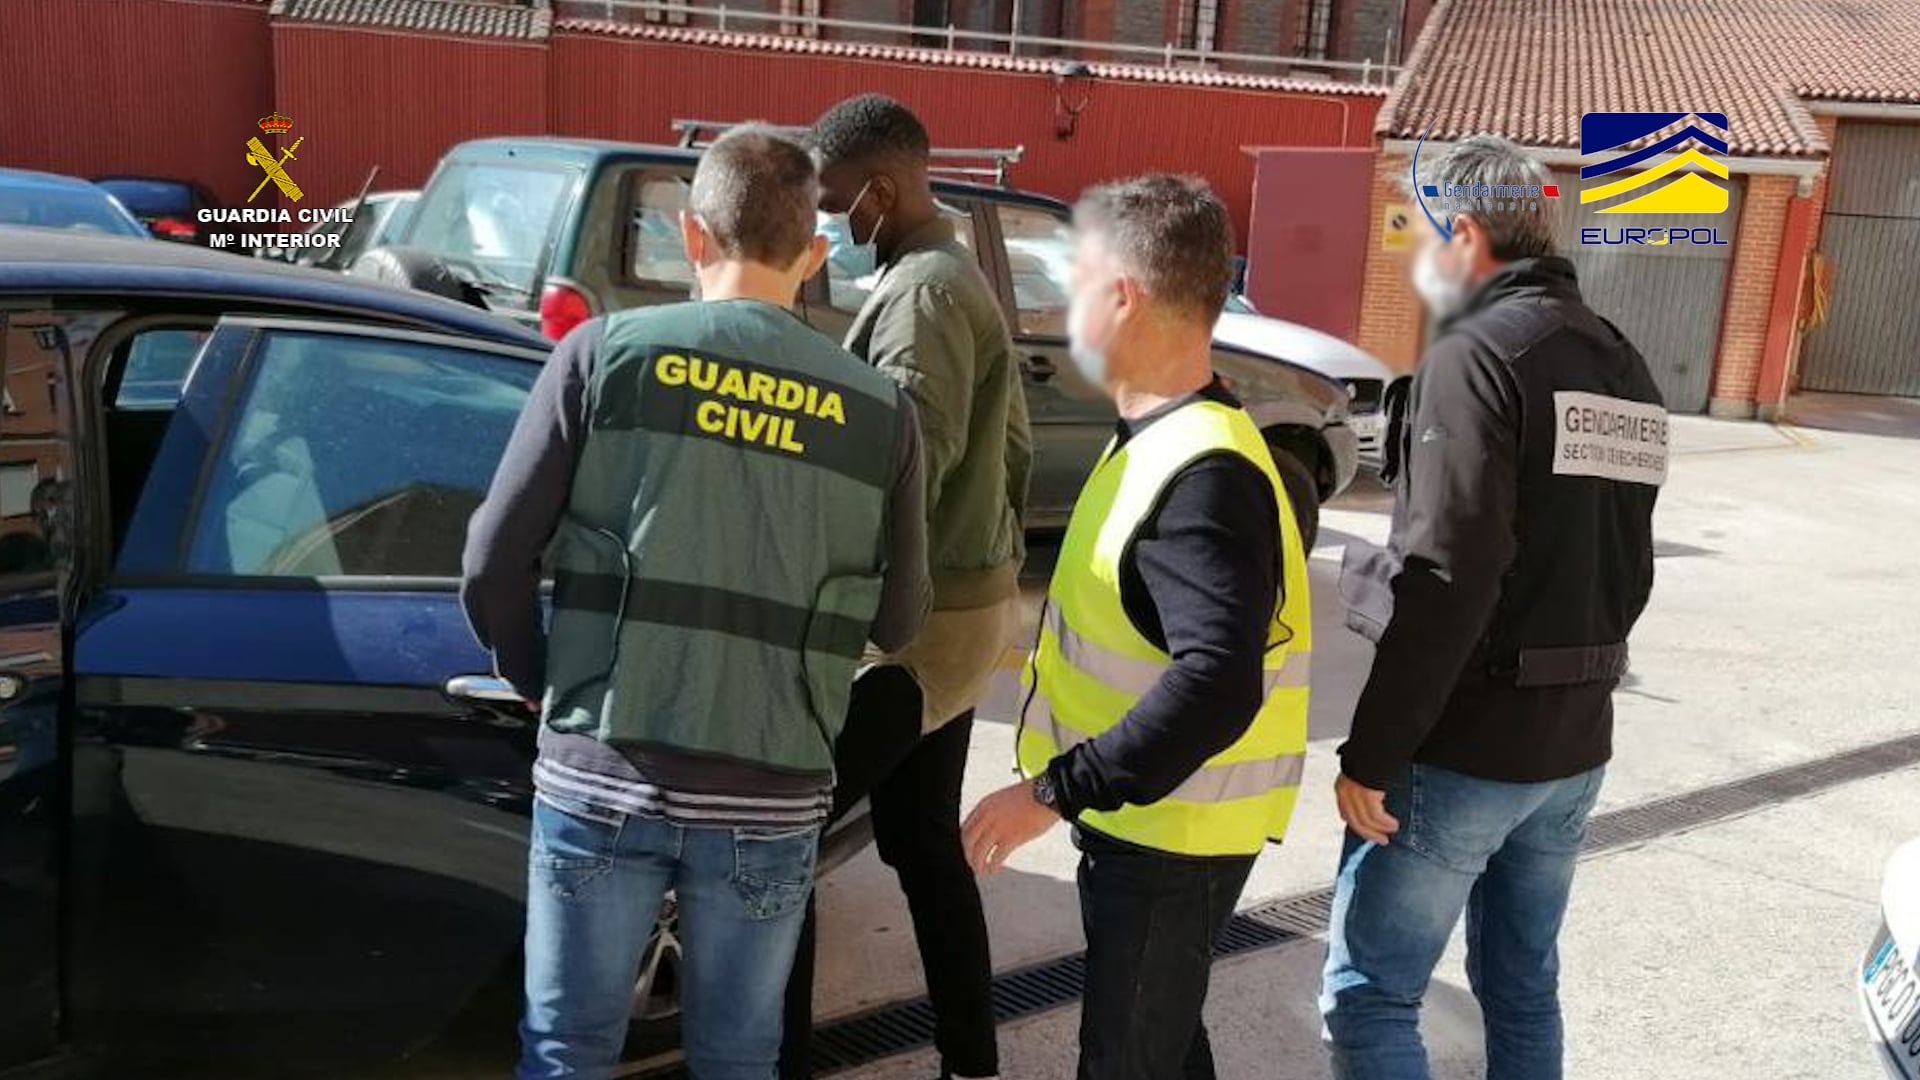 2021 10 25 op.poltsa 03 - Siete detenidos en Gipuzkoa, Bizkaia y Navarra por pasar migrantes a Francia